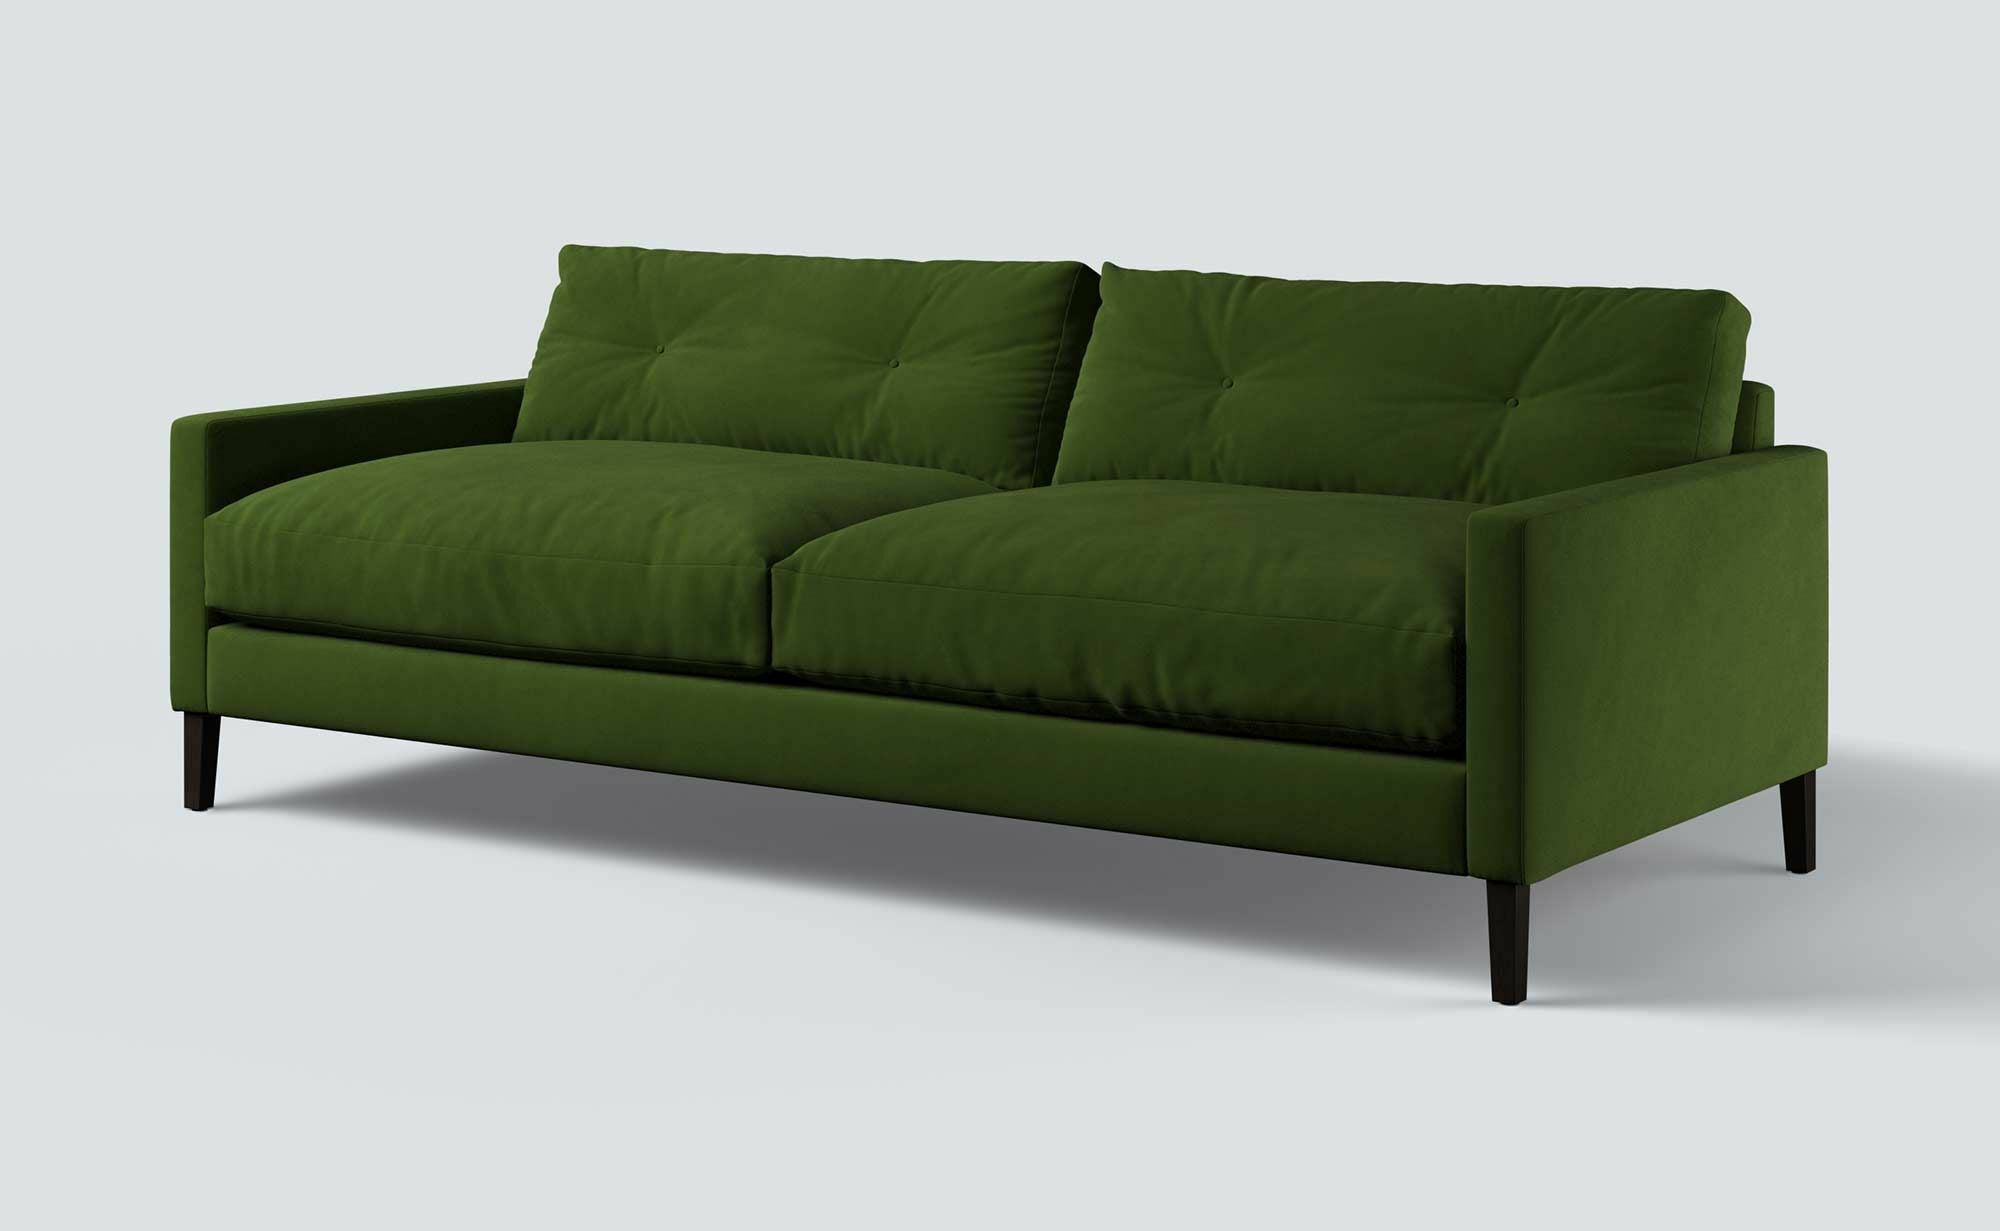 Kasper Grass Green Stain Guarded Velvet Sofa